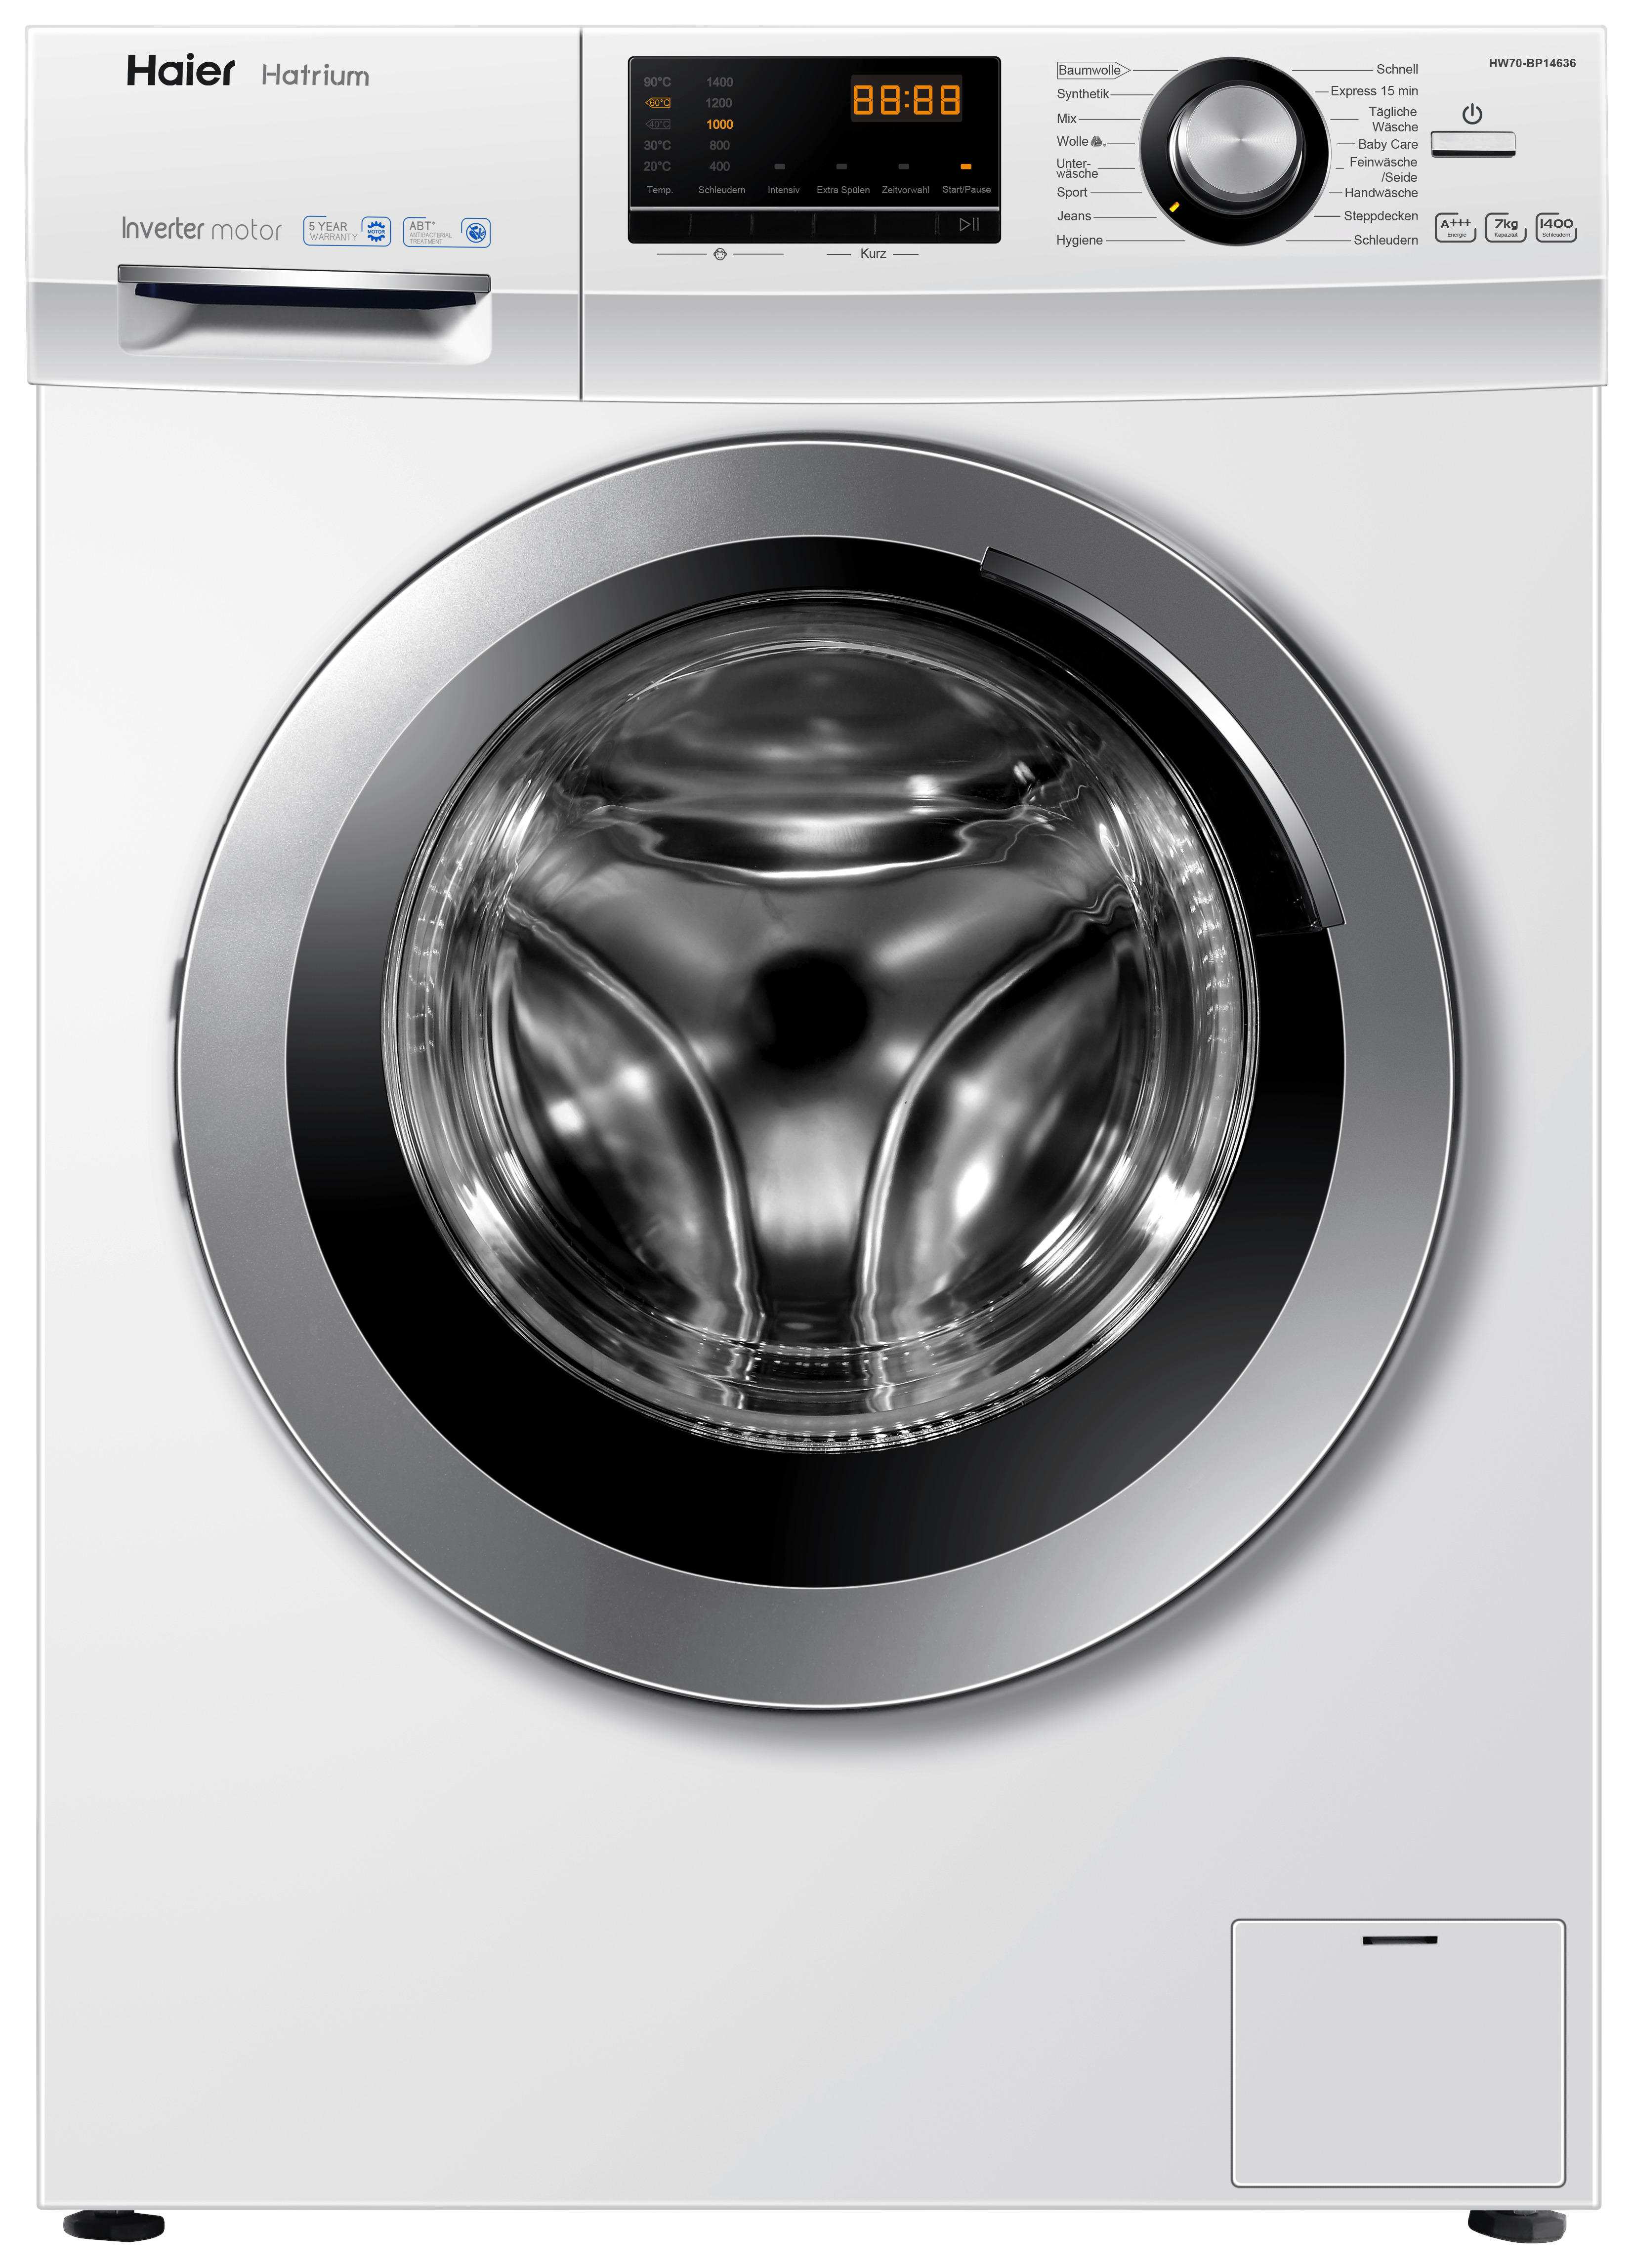 Die besten Vergleichssieger - Wählen Sie bei uns die Waschmaschinen günstig kaufen Ihren Wünschen entsprechend